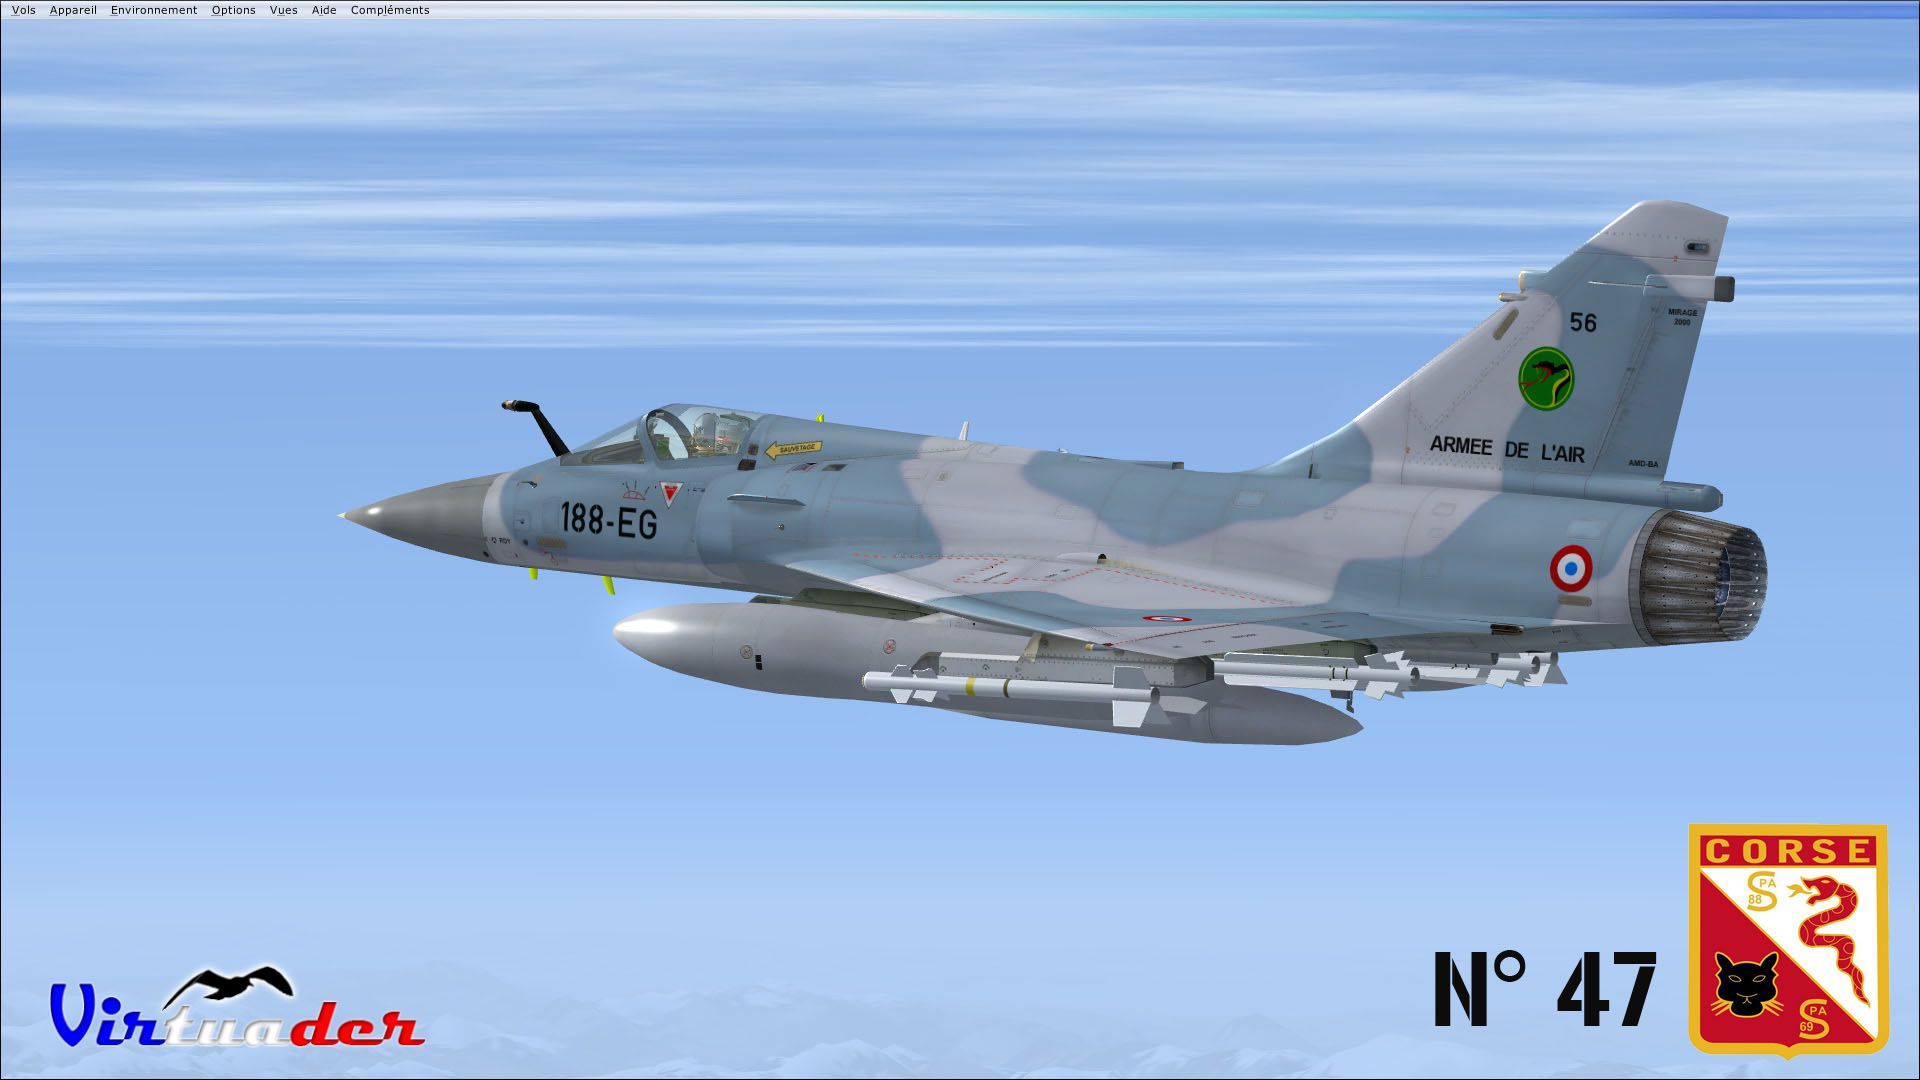 Мираж 2000 года. Mirage 2000 avec Apache. Фото самолет Мираж на рабочий стол андроид. 3 Часа назад Мираж 2000.